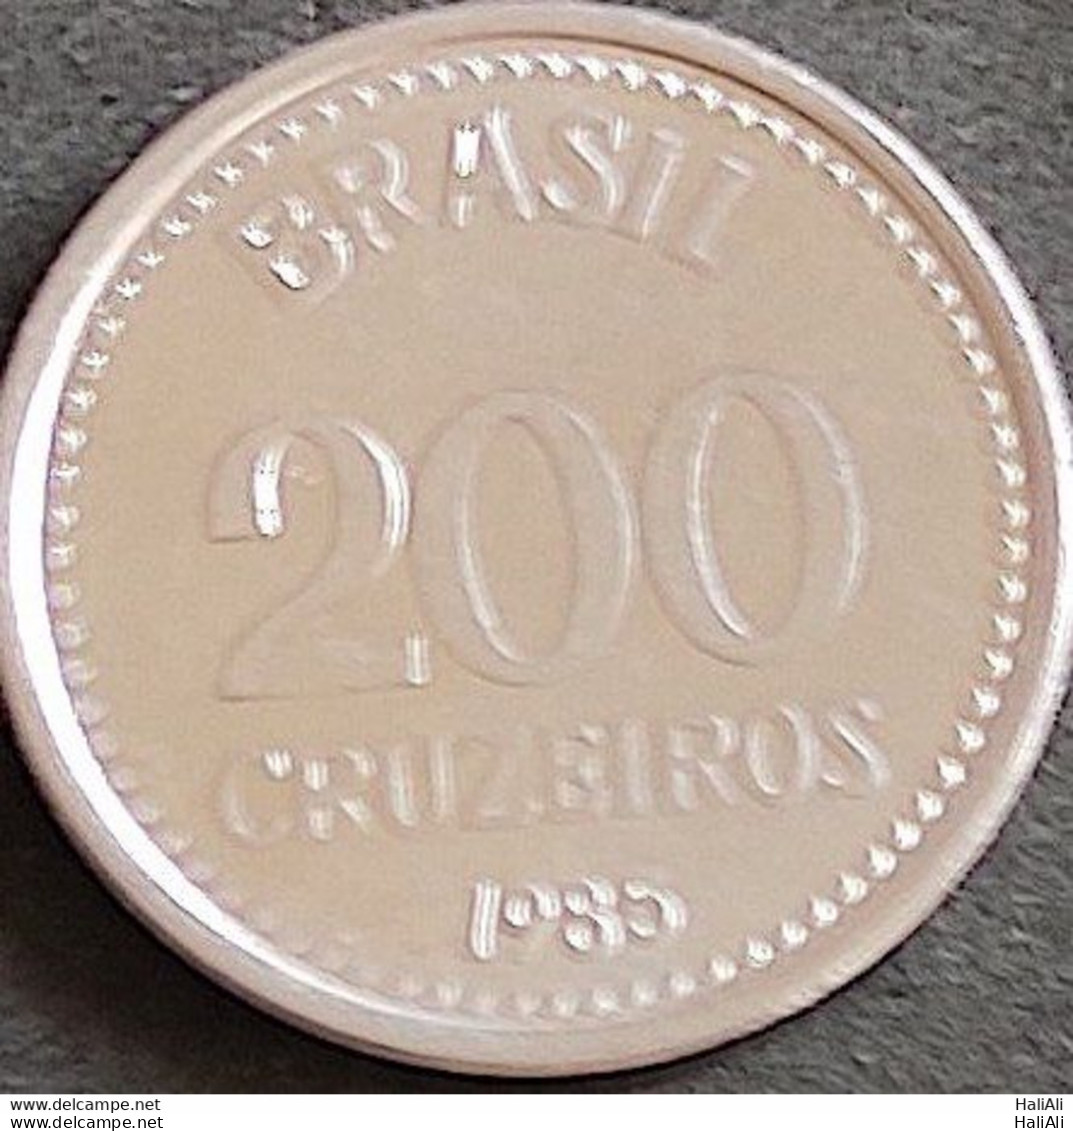 Coin Brazil Moeda Brasil 1985 200 Cruzeiros 1 - Brasile